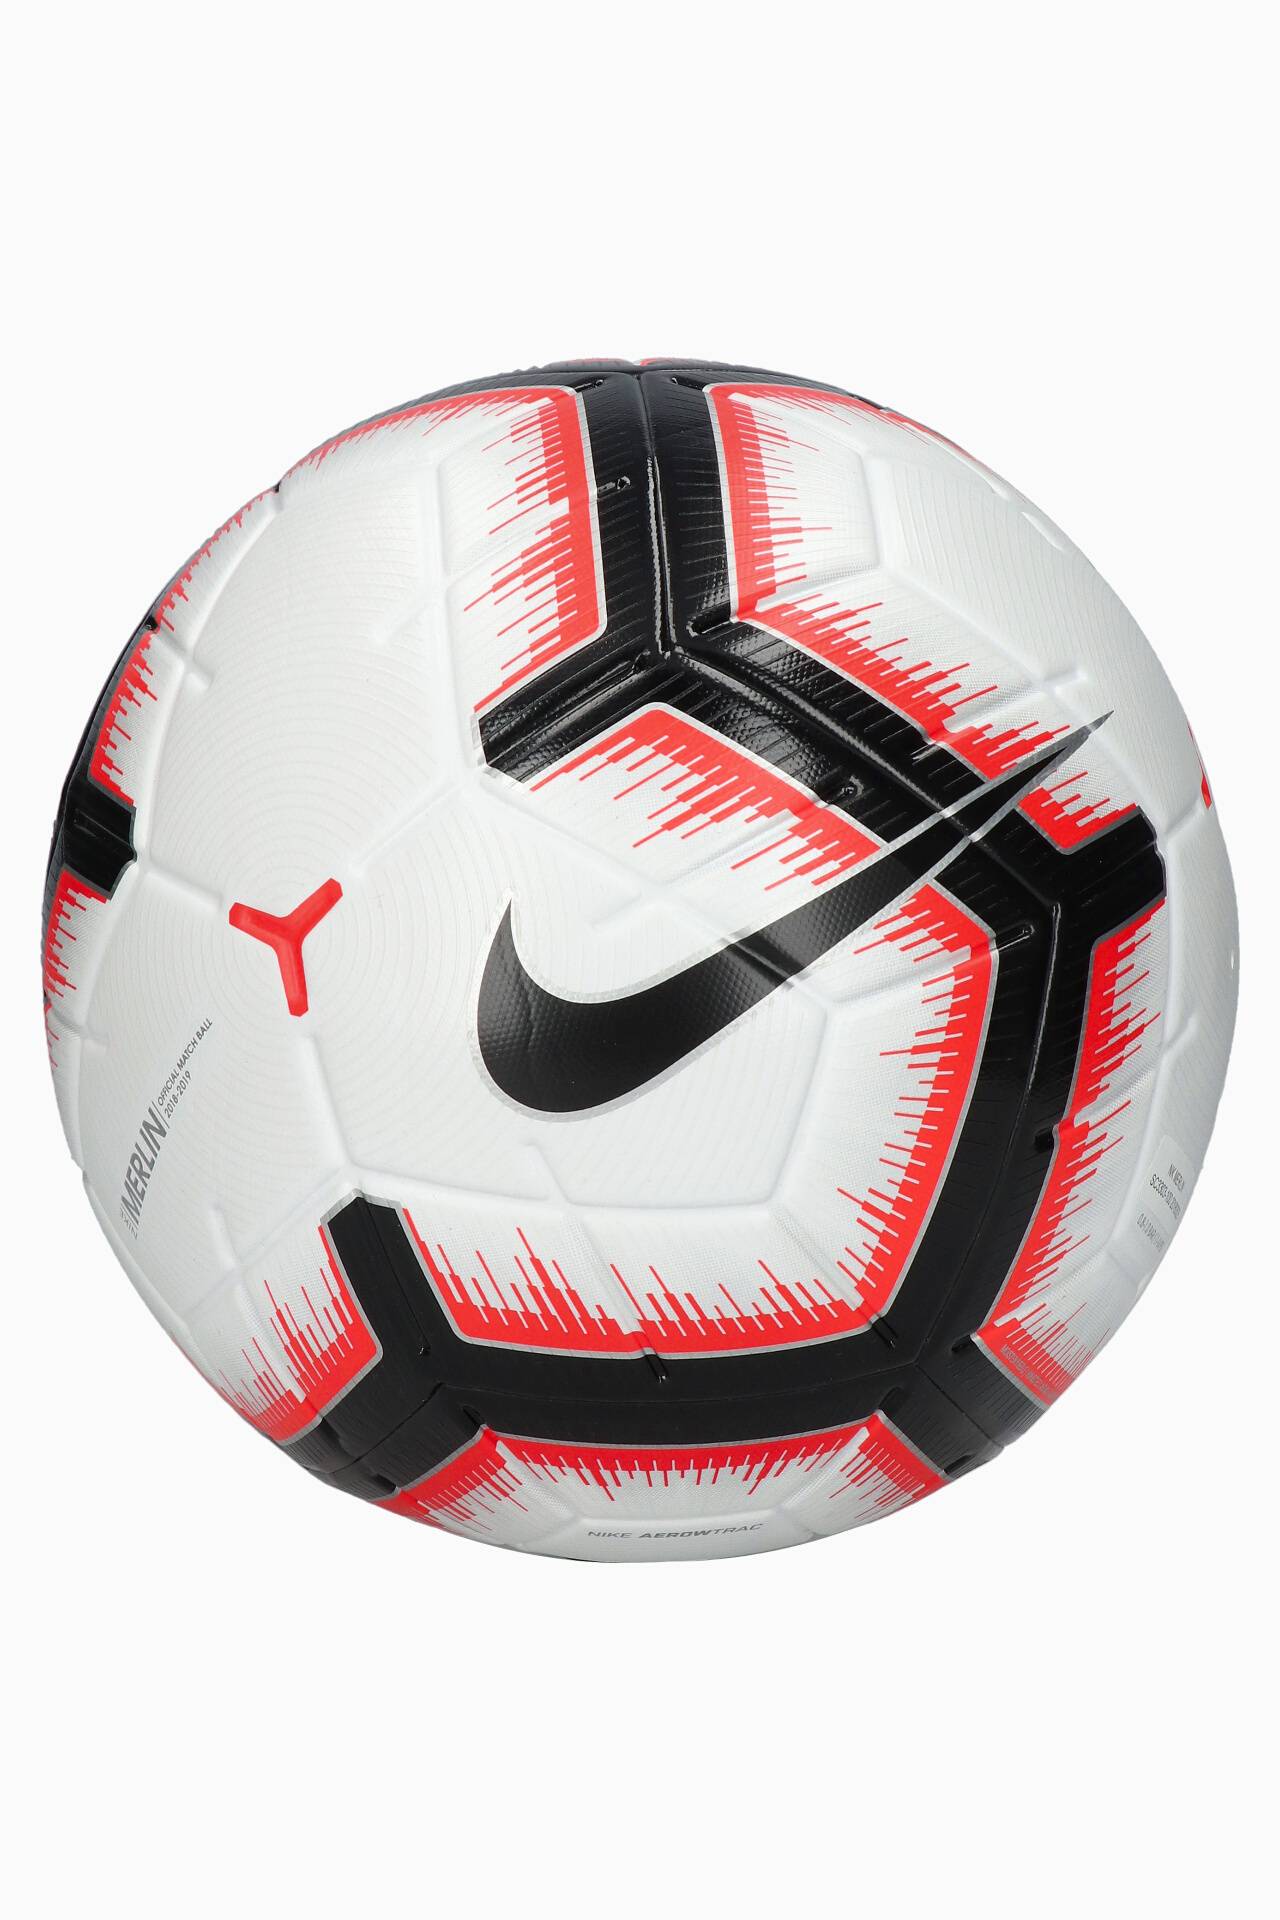 Ball size 5 R-GOL.com - Football boots & equipment